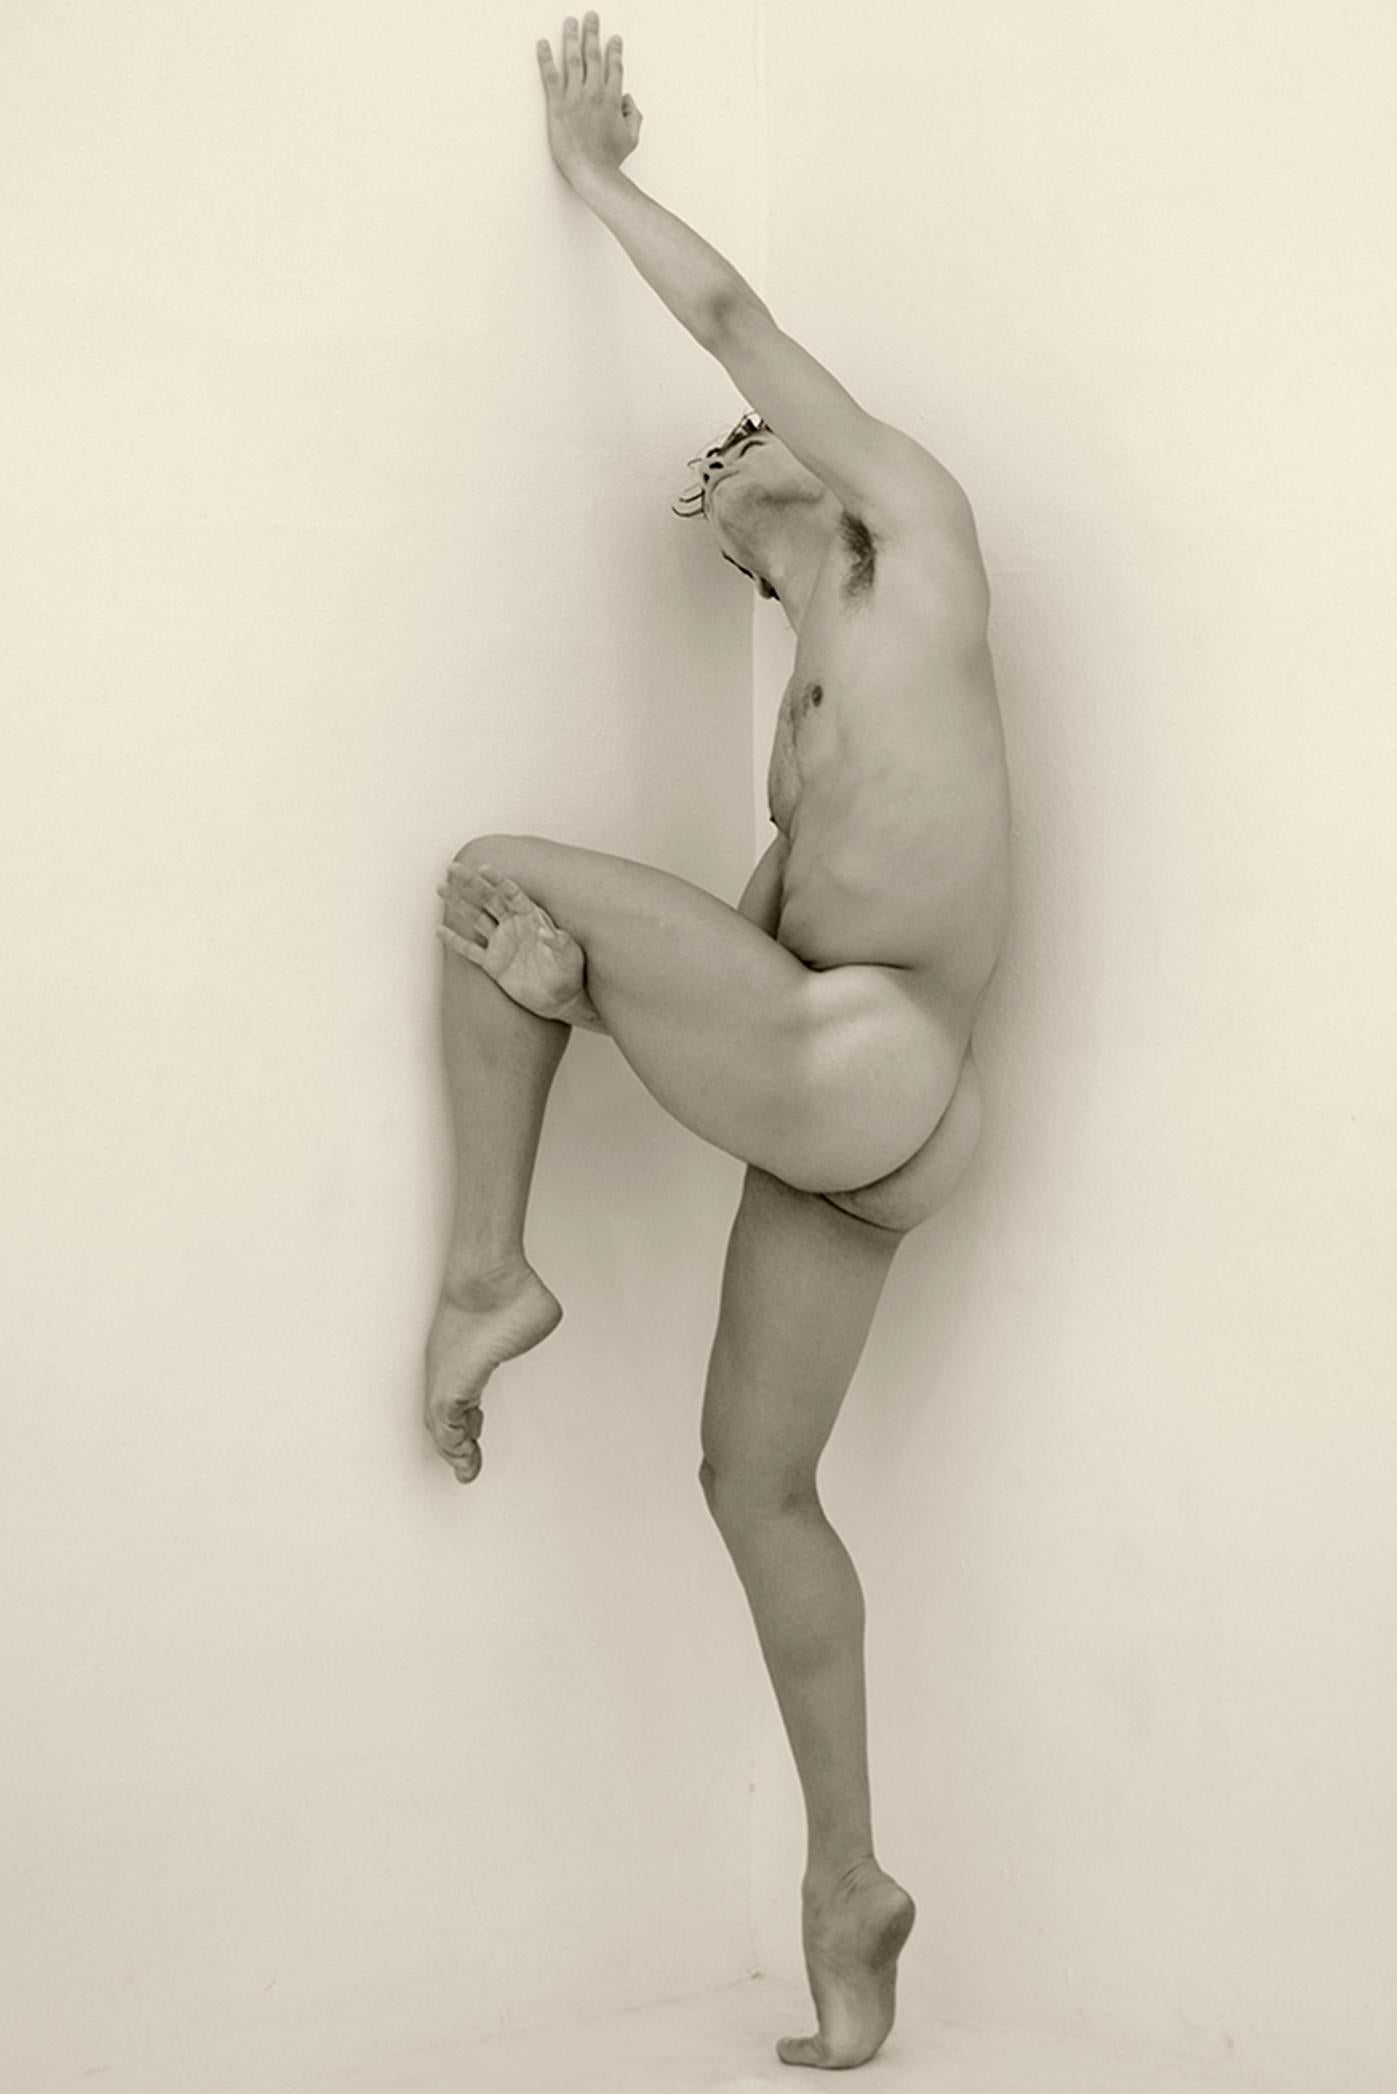 Mann an der Wand, zweier-Set. Motion Series. männlicher Aktfotografie Sepia (Beige), Black and White Photograph, von Ricky Cohete